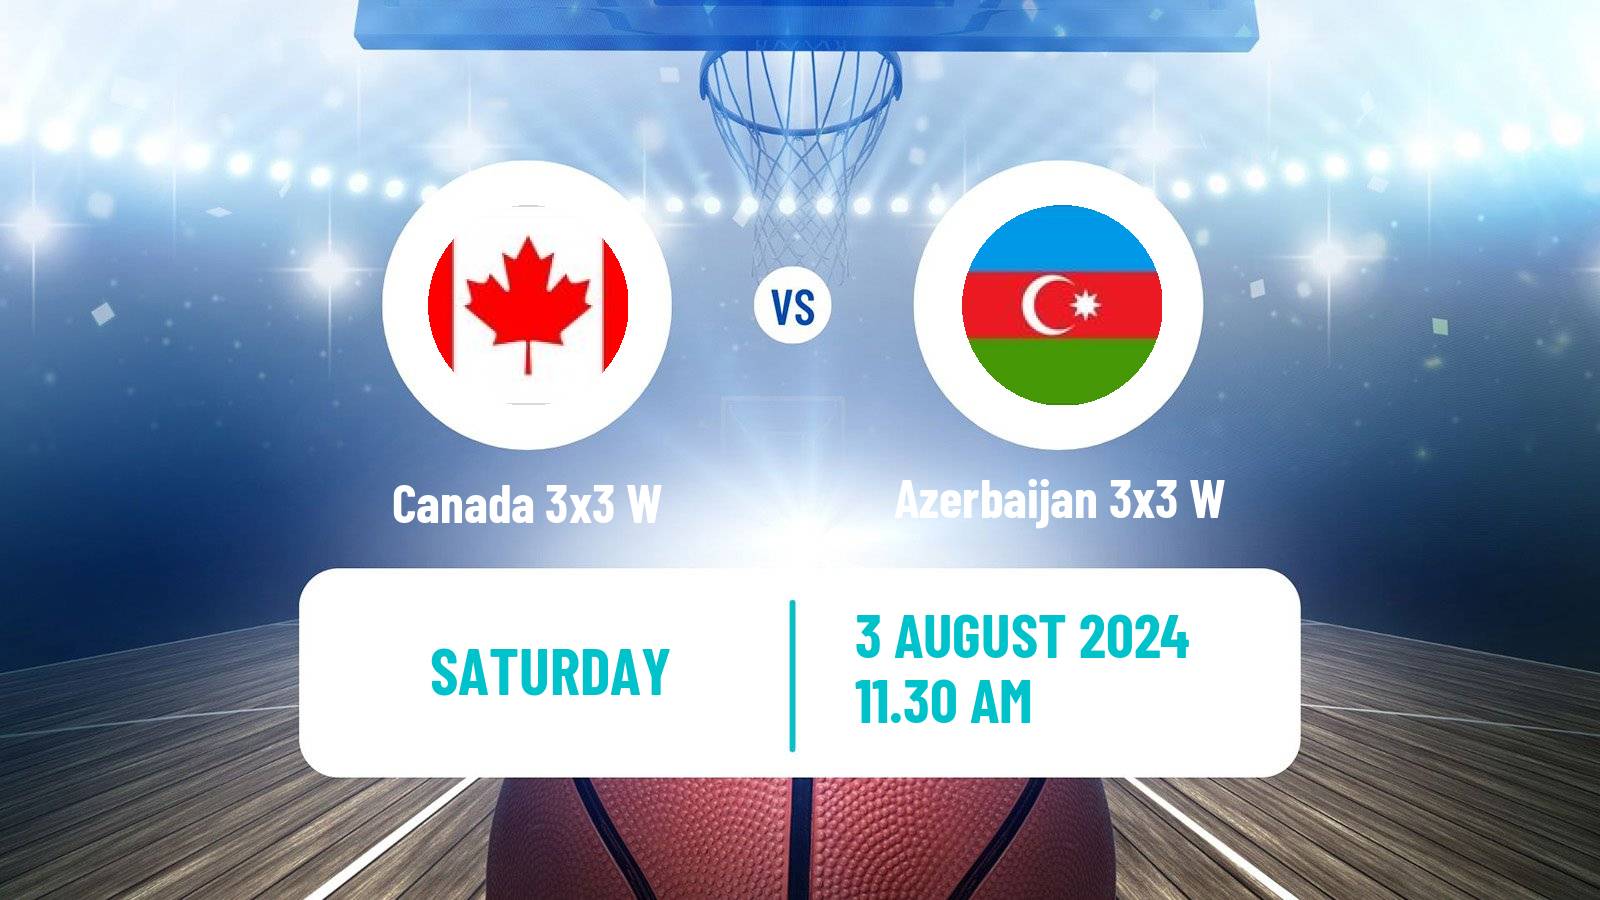 Basketball Olympic Games Basketball 3x3 Women Canada 3x3 W - Azerbaijan 3x3 W